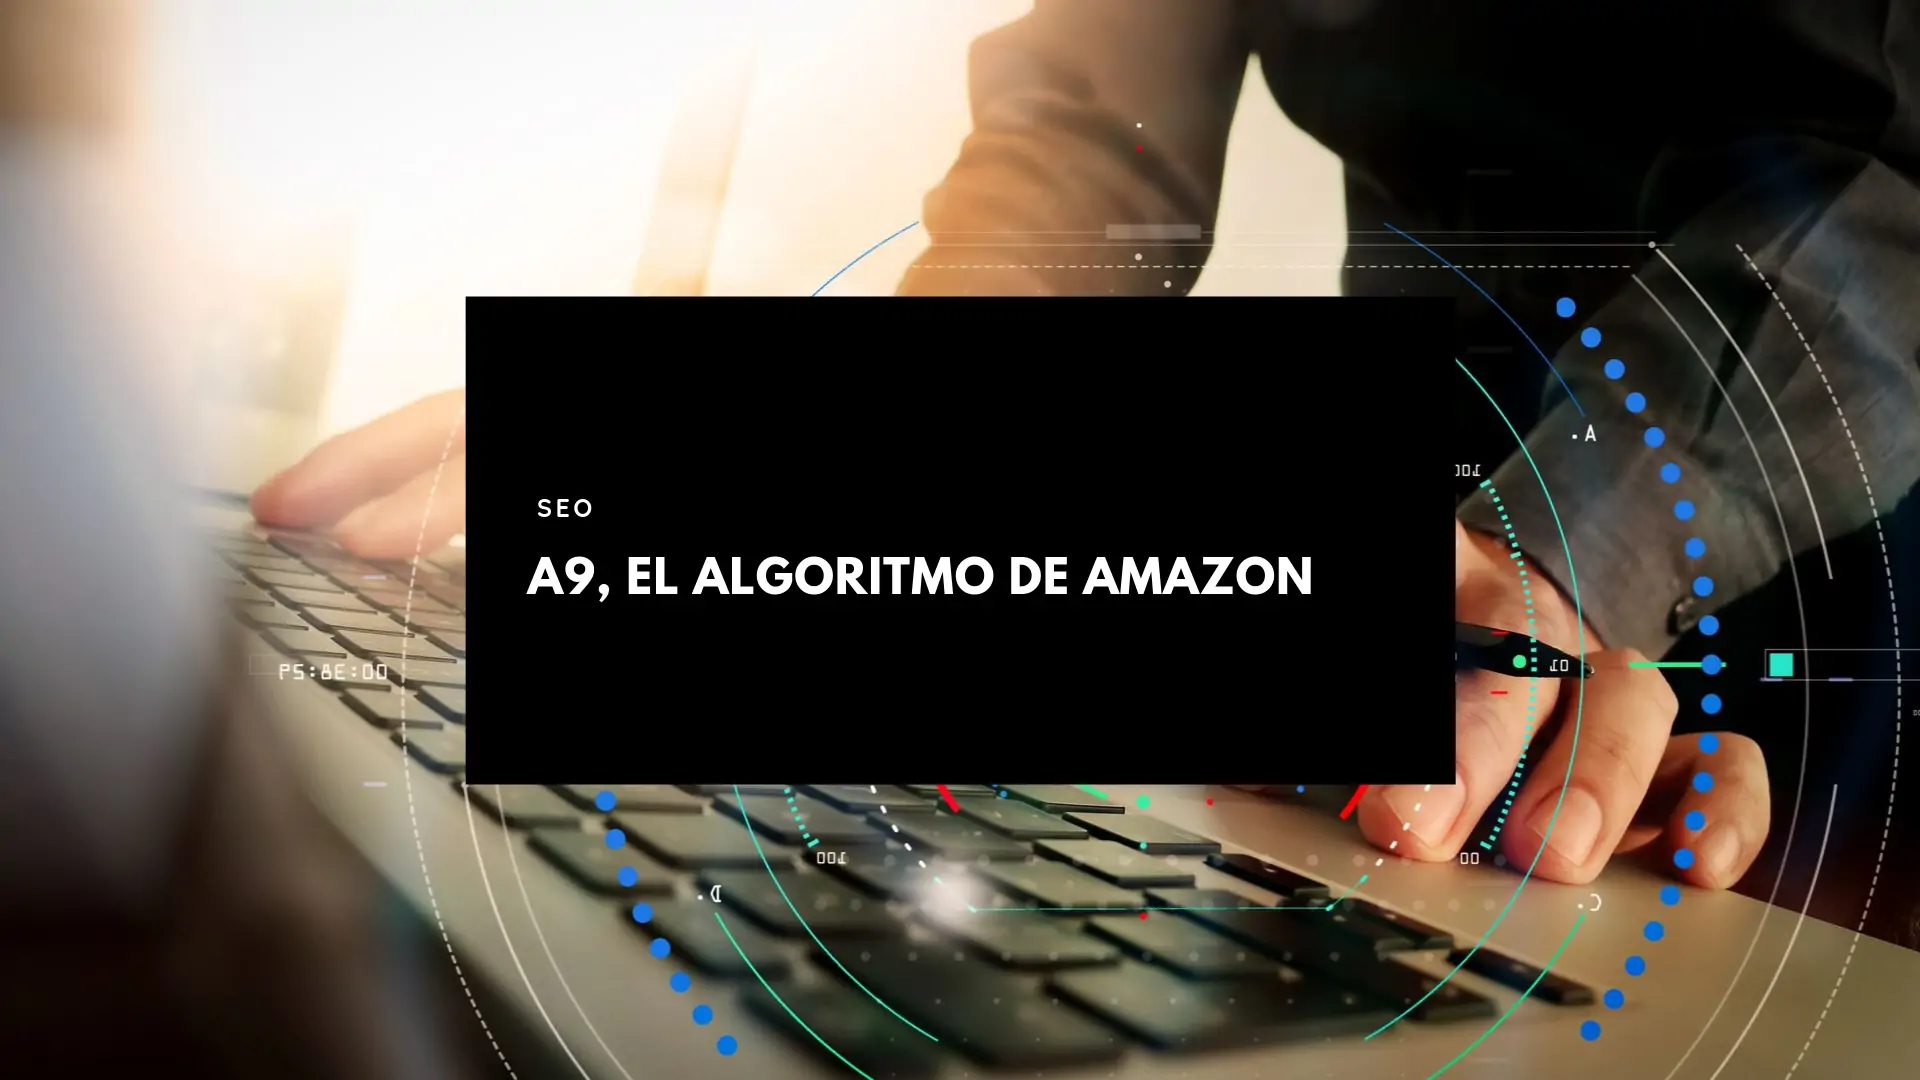 A9, el Algoritmo de Amazon